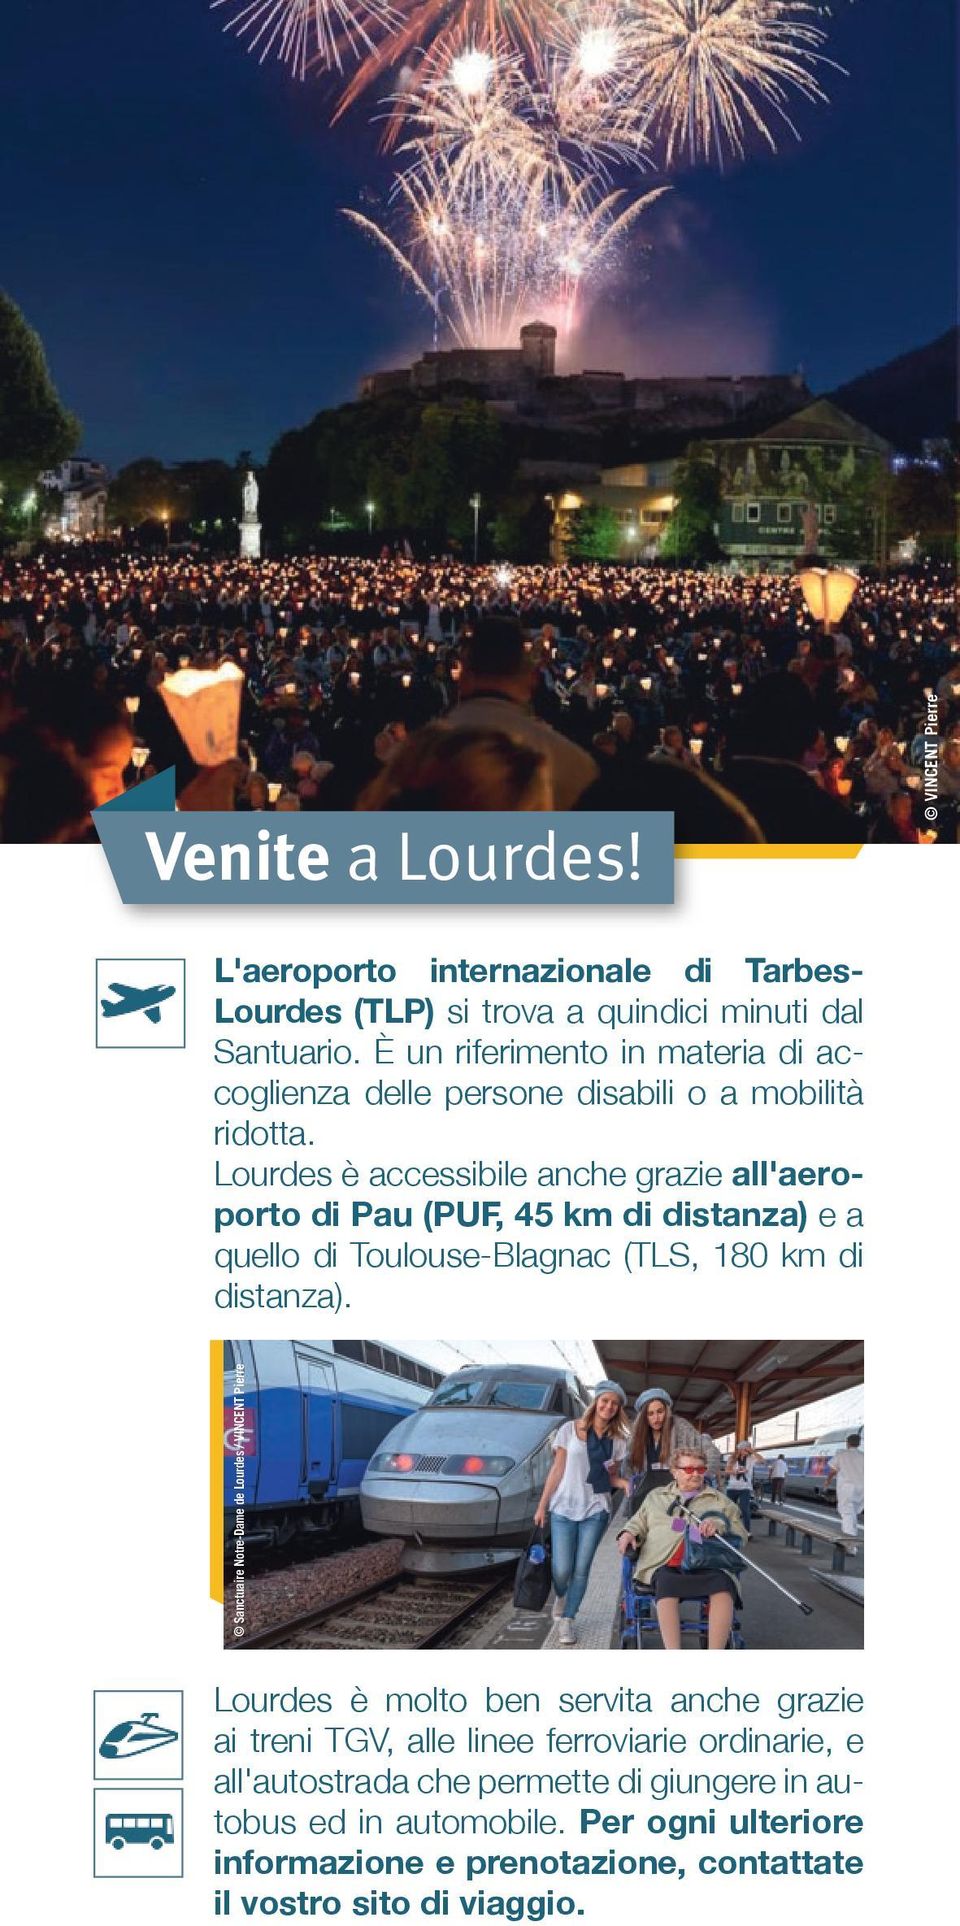 Lourdes è accessibile anche grazie all'aeroporto di Pau (PUF, 45 km di distanza) e a quello di Toulouse-Blagnac (TLS, 180 km di distanza).